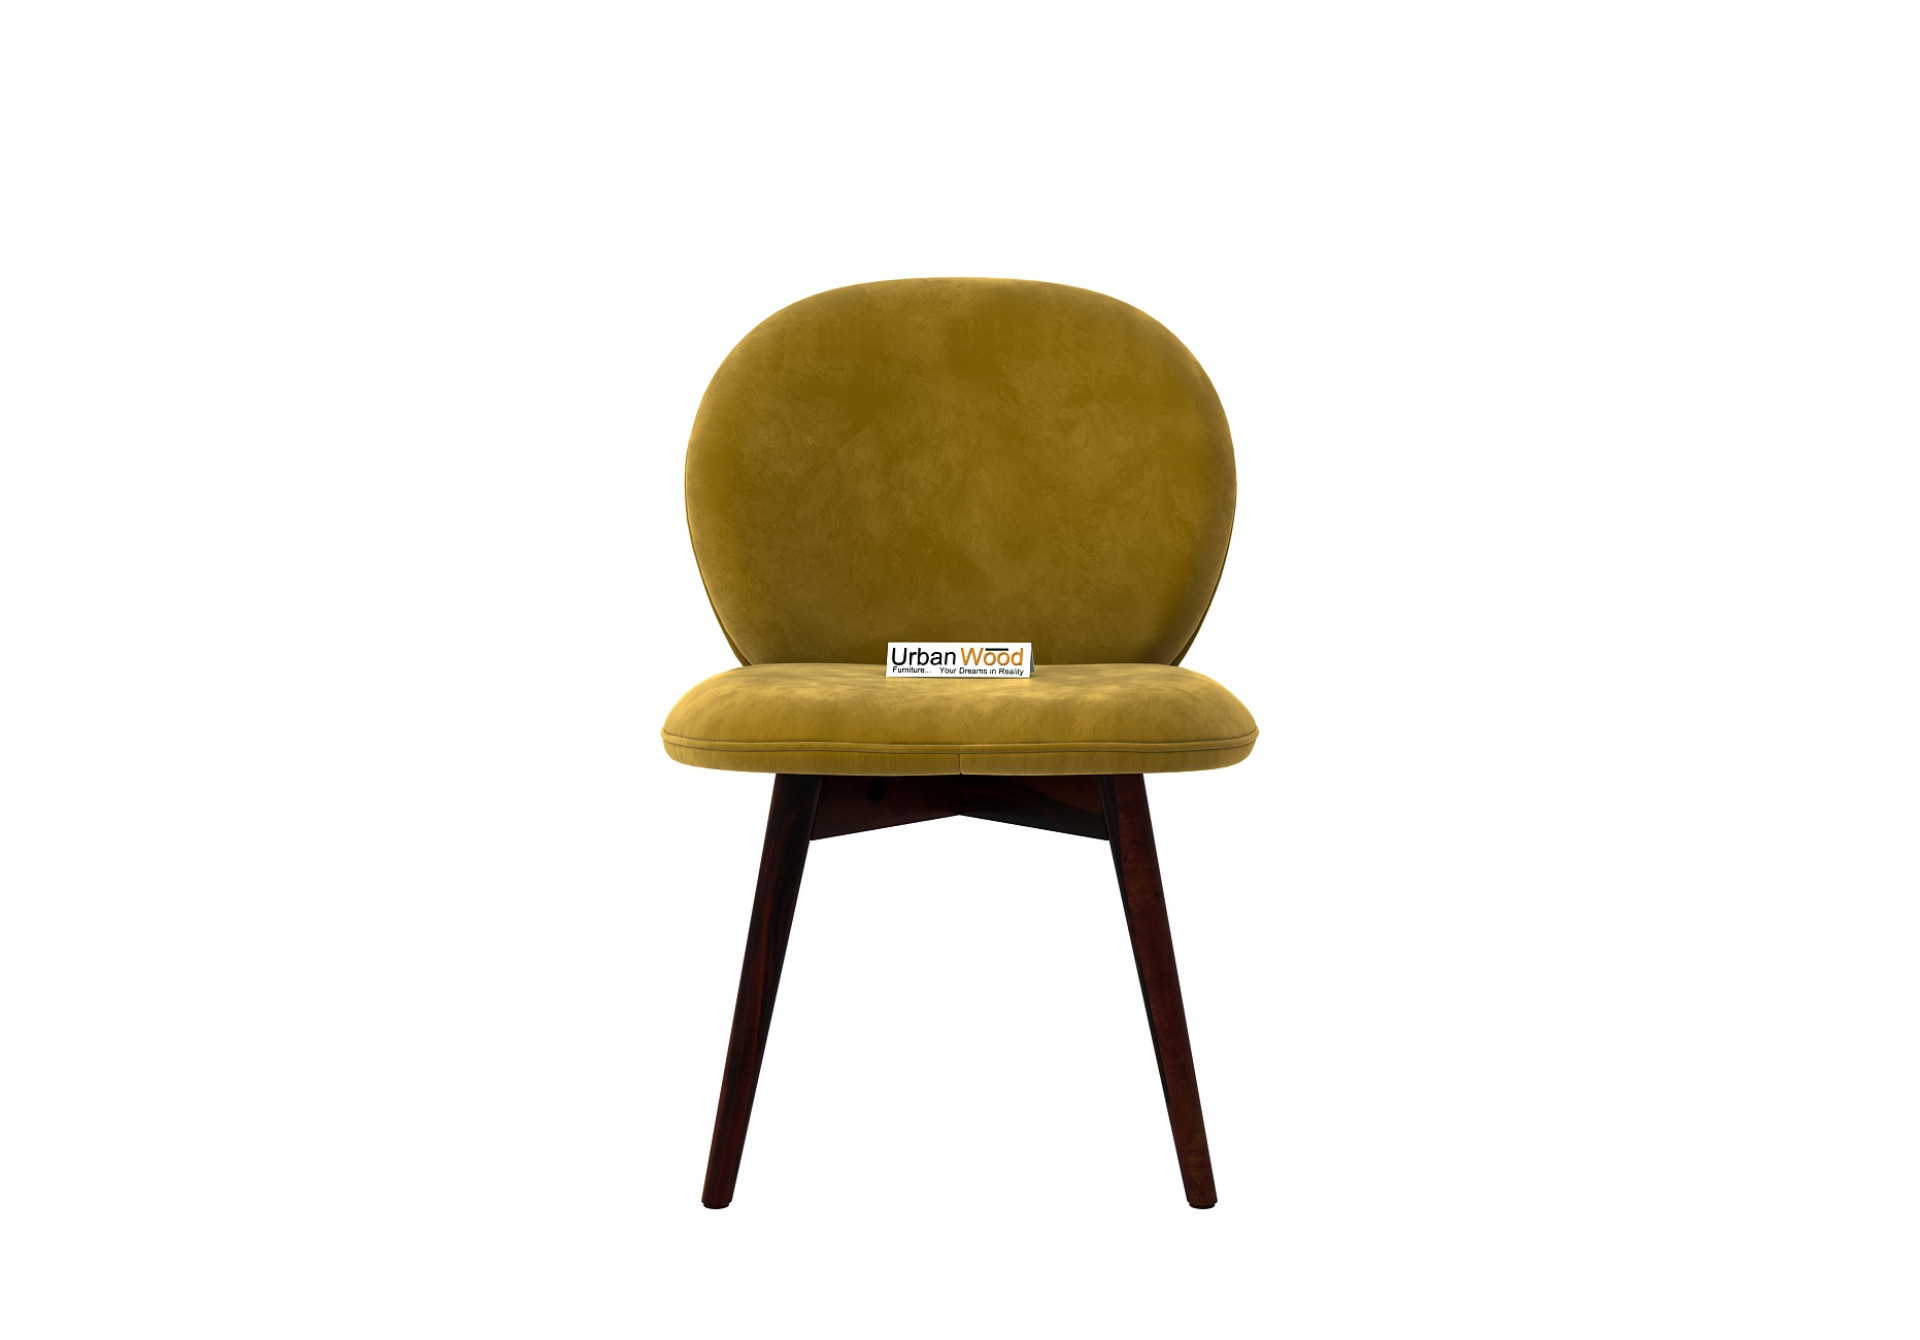 Serene Dining Chair - Set Of 2 (Velvet, Amber Gold)